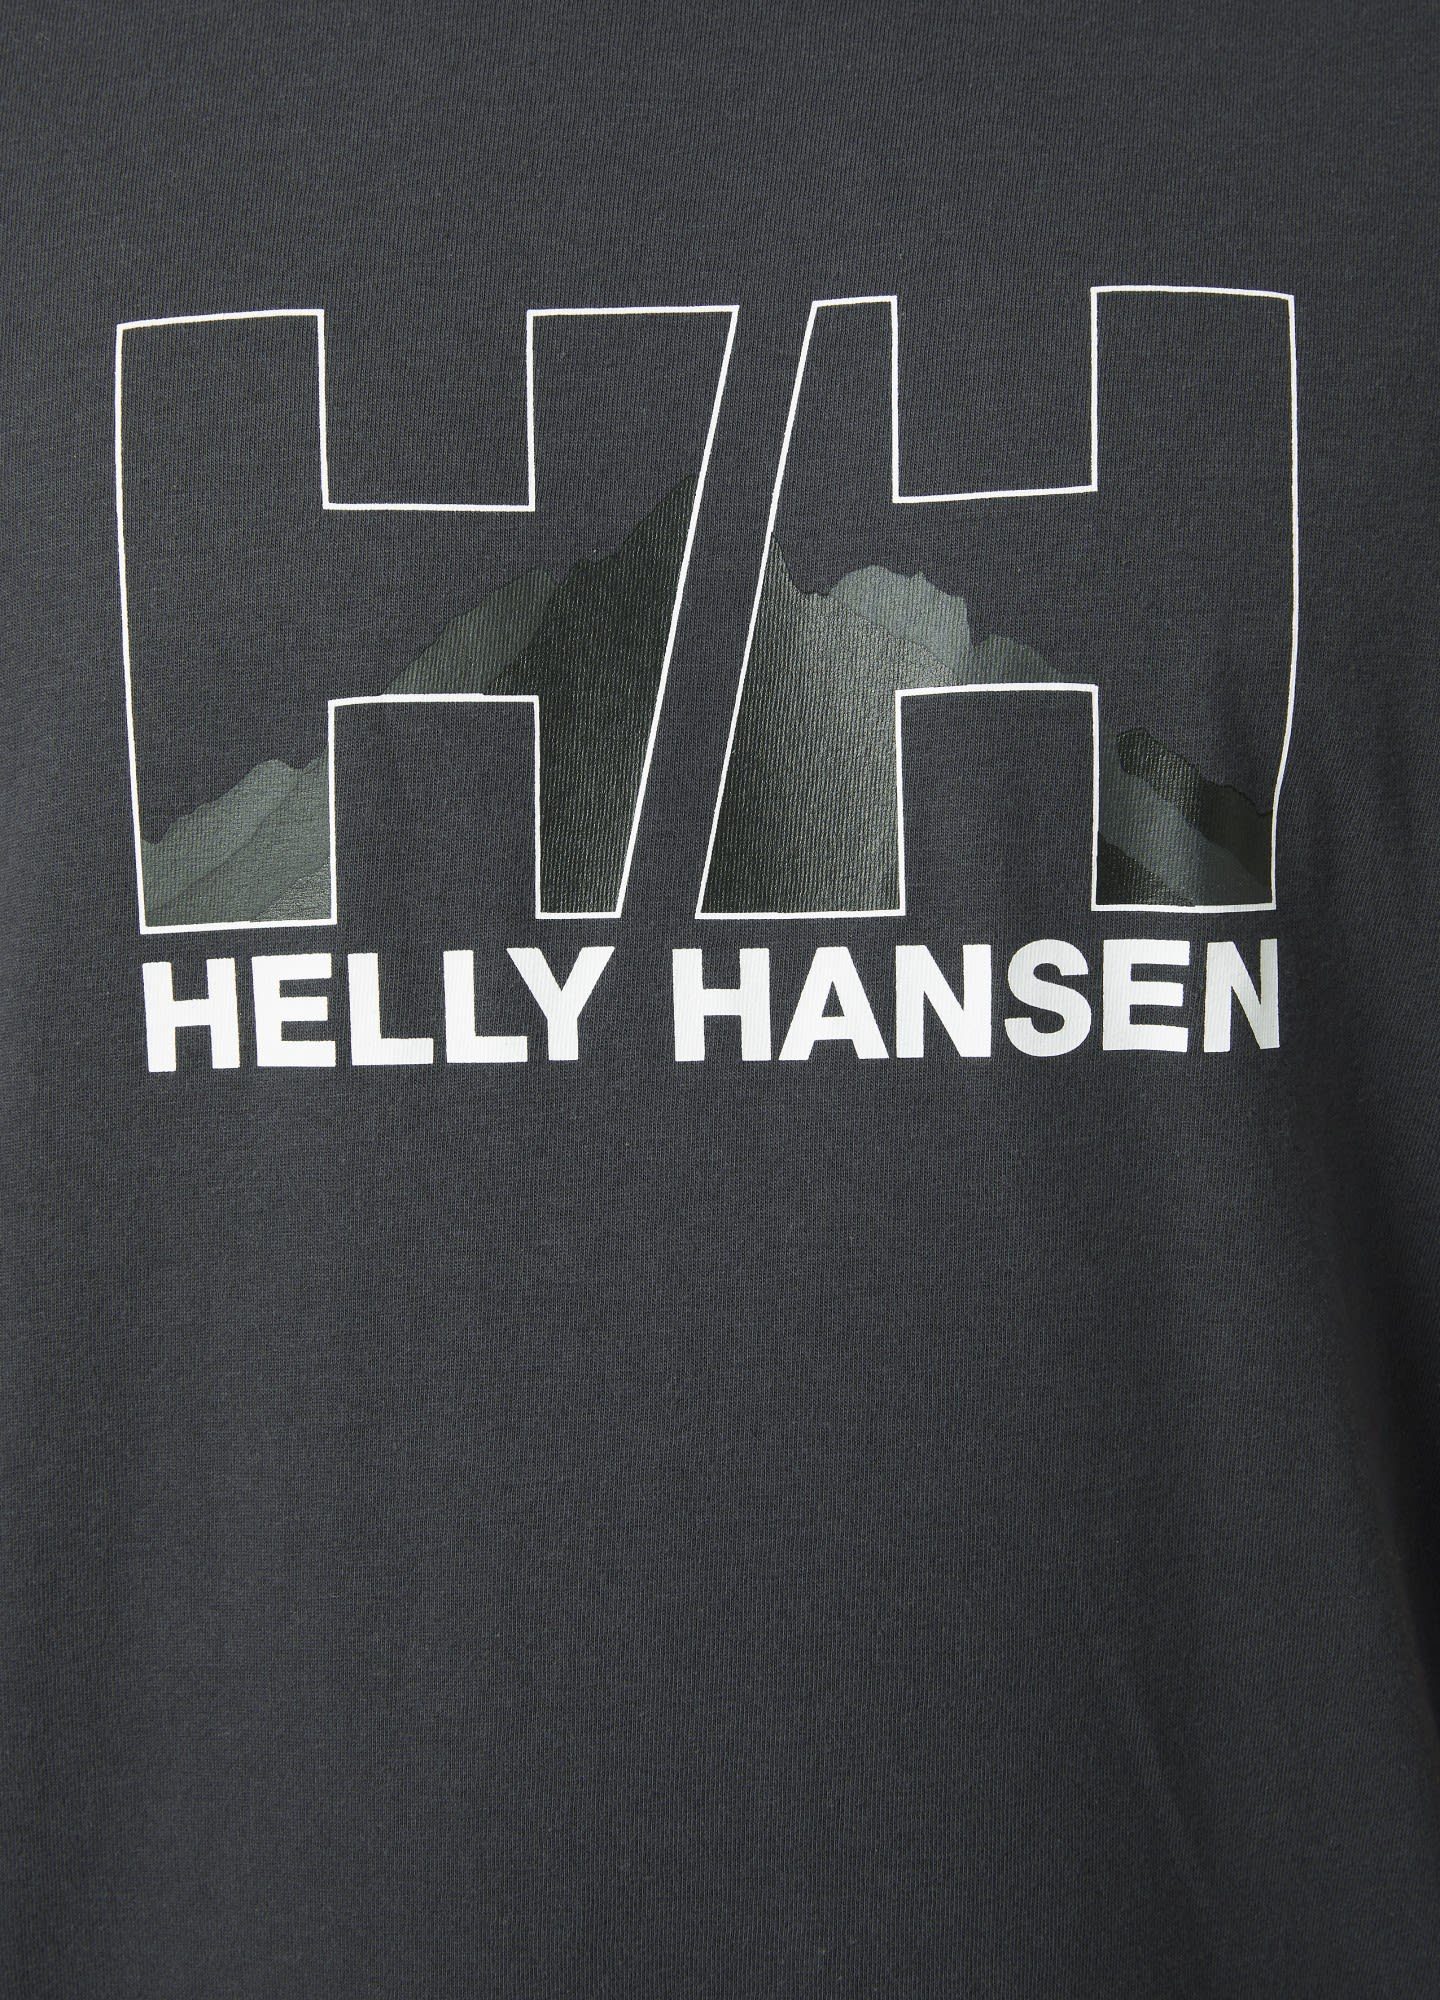 Ebony M Helly Helly Nord Hansen T-shirt T-Shirt Hansen Graphic Herren